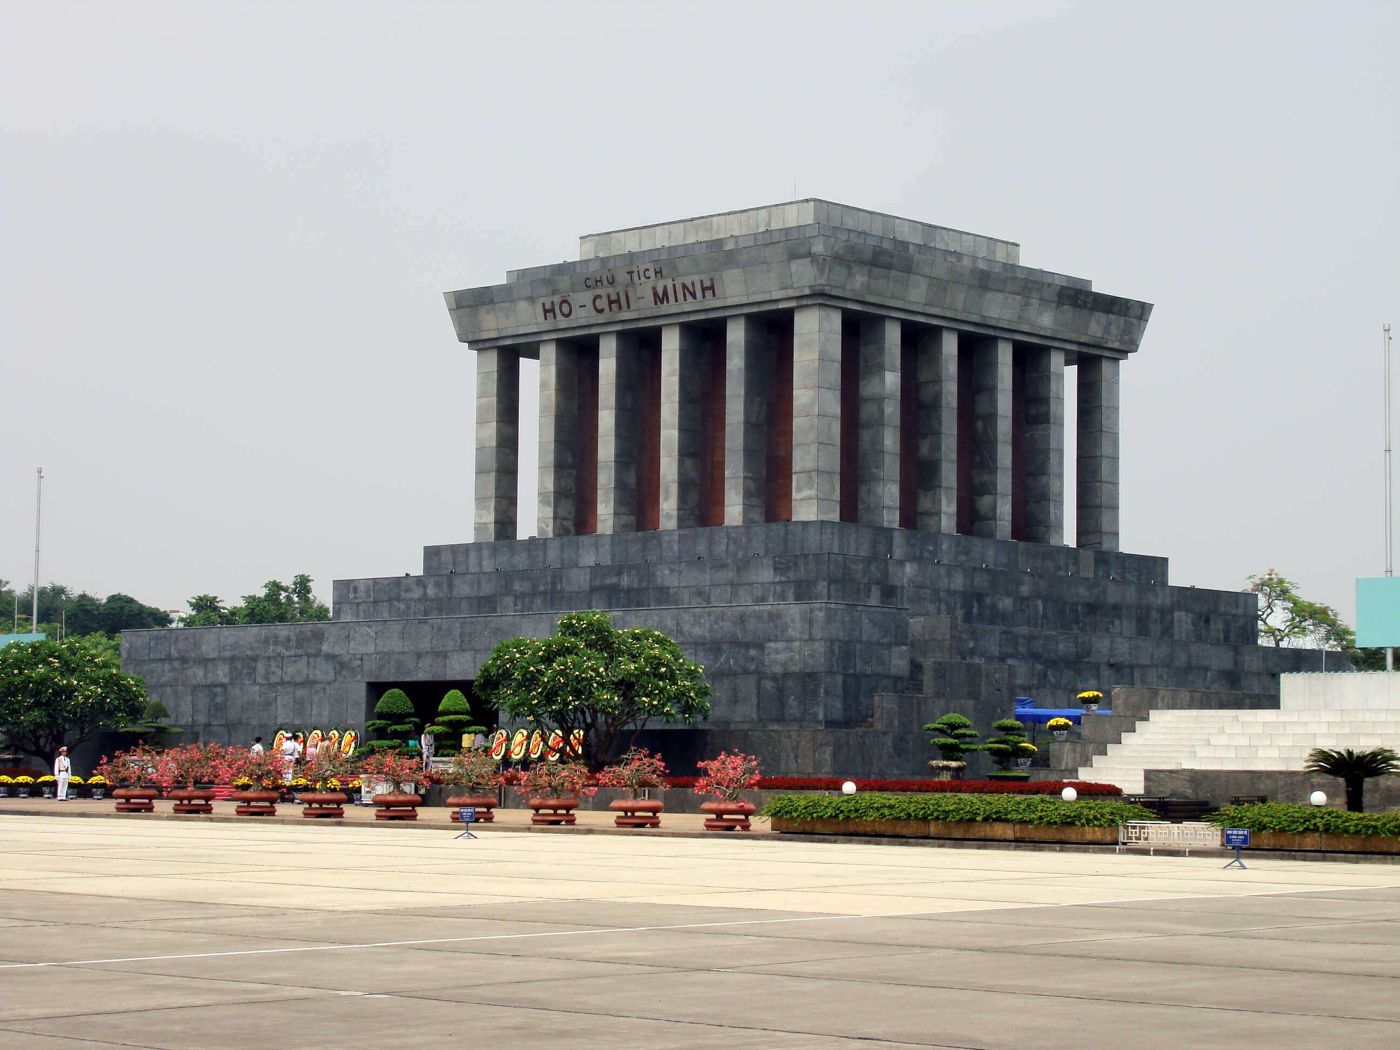 Visit Ho Chi Minh's Mausoleum